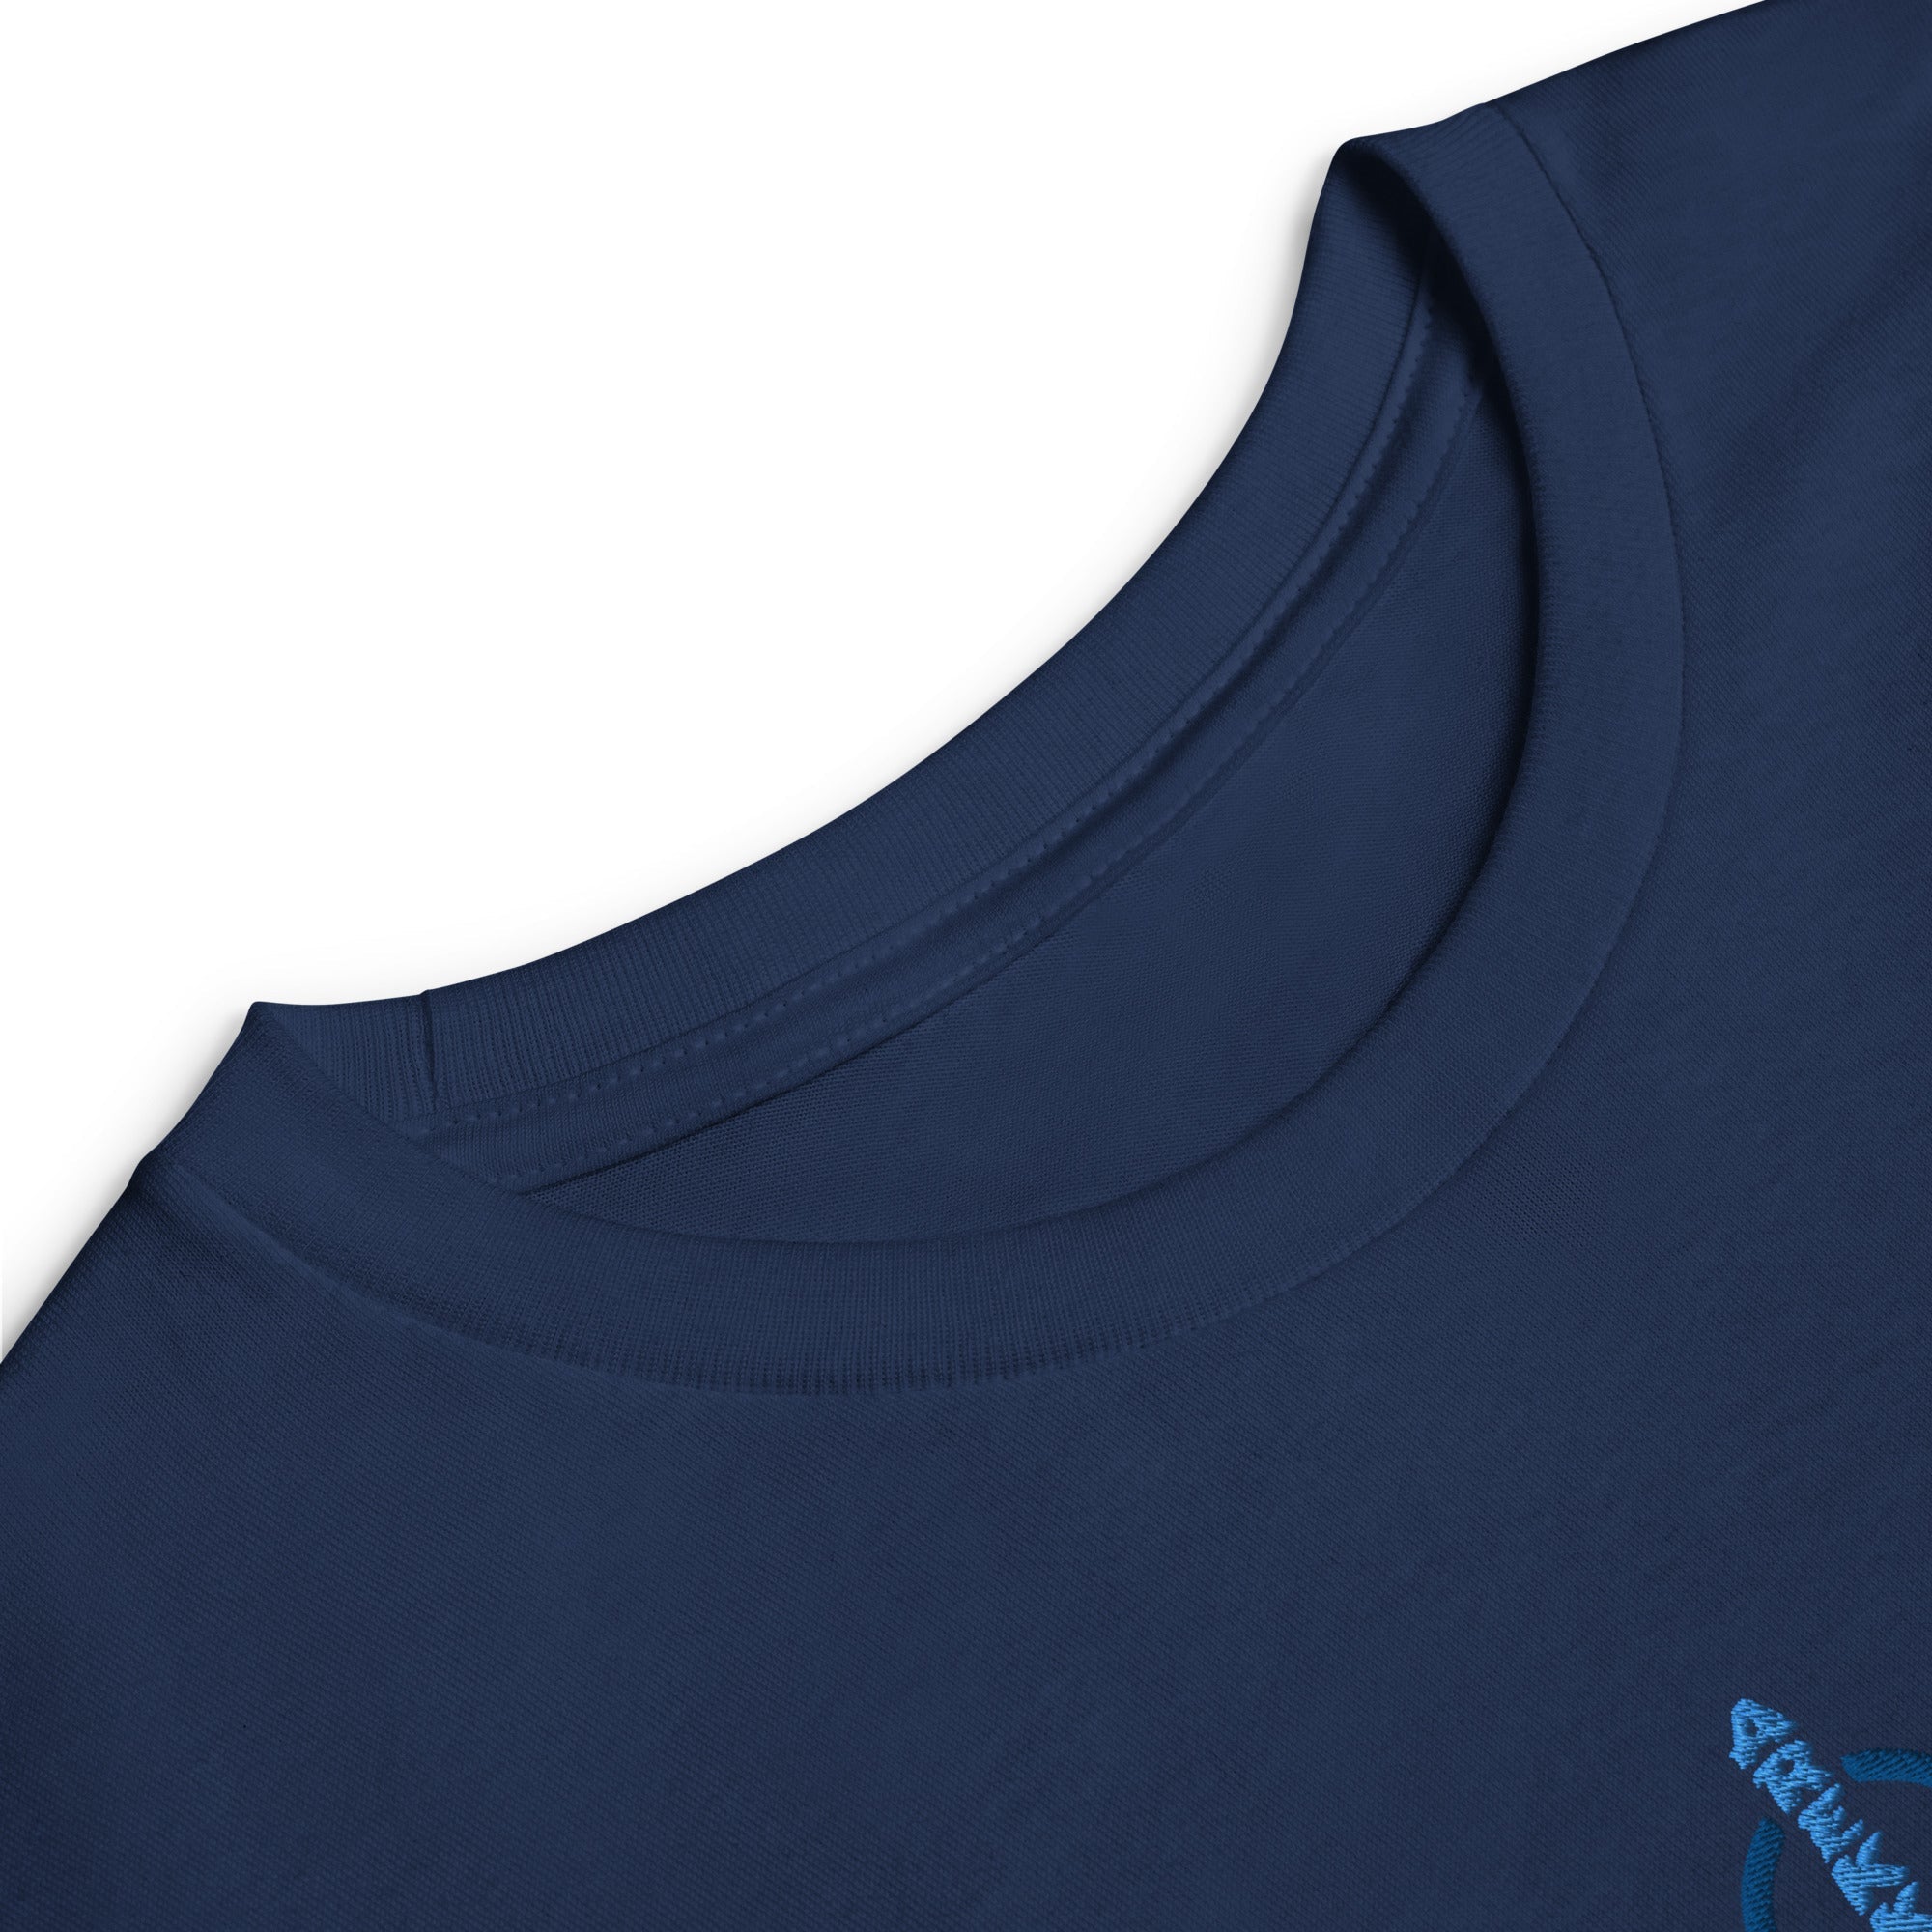 Unisex Youth Long Sleeve Shirt-10